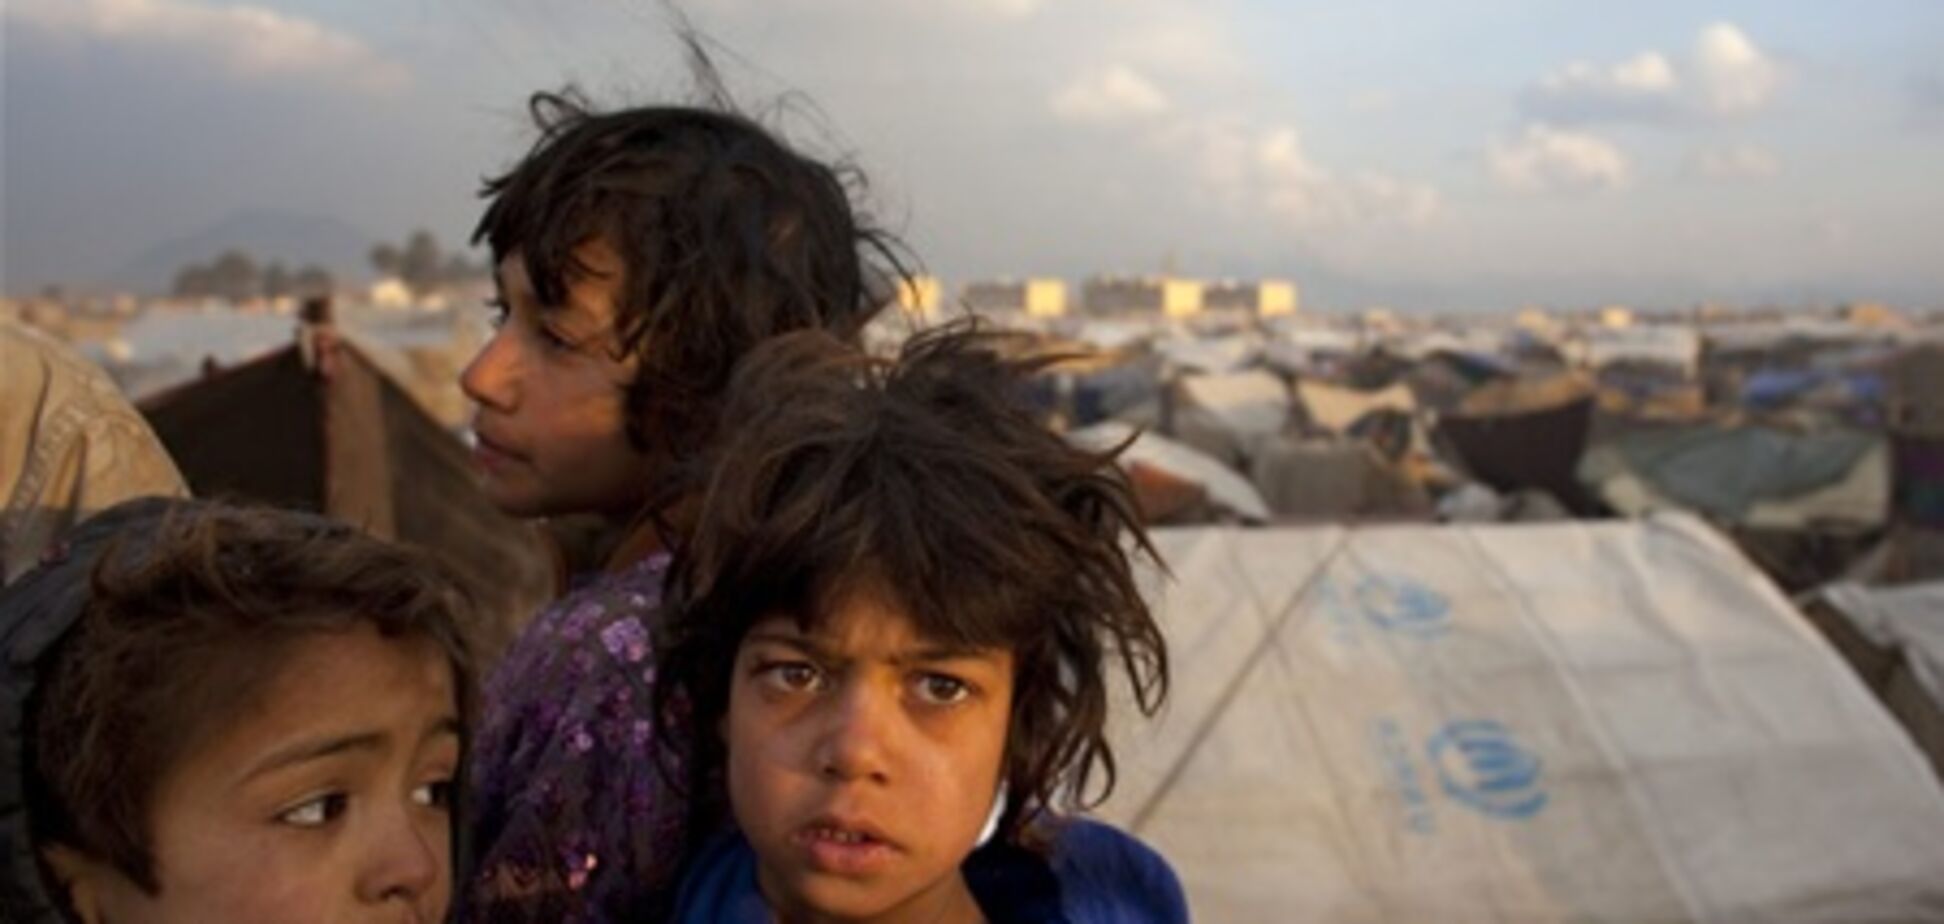 Семеро детей во время игры подорвались на мине в Афганистане